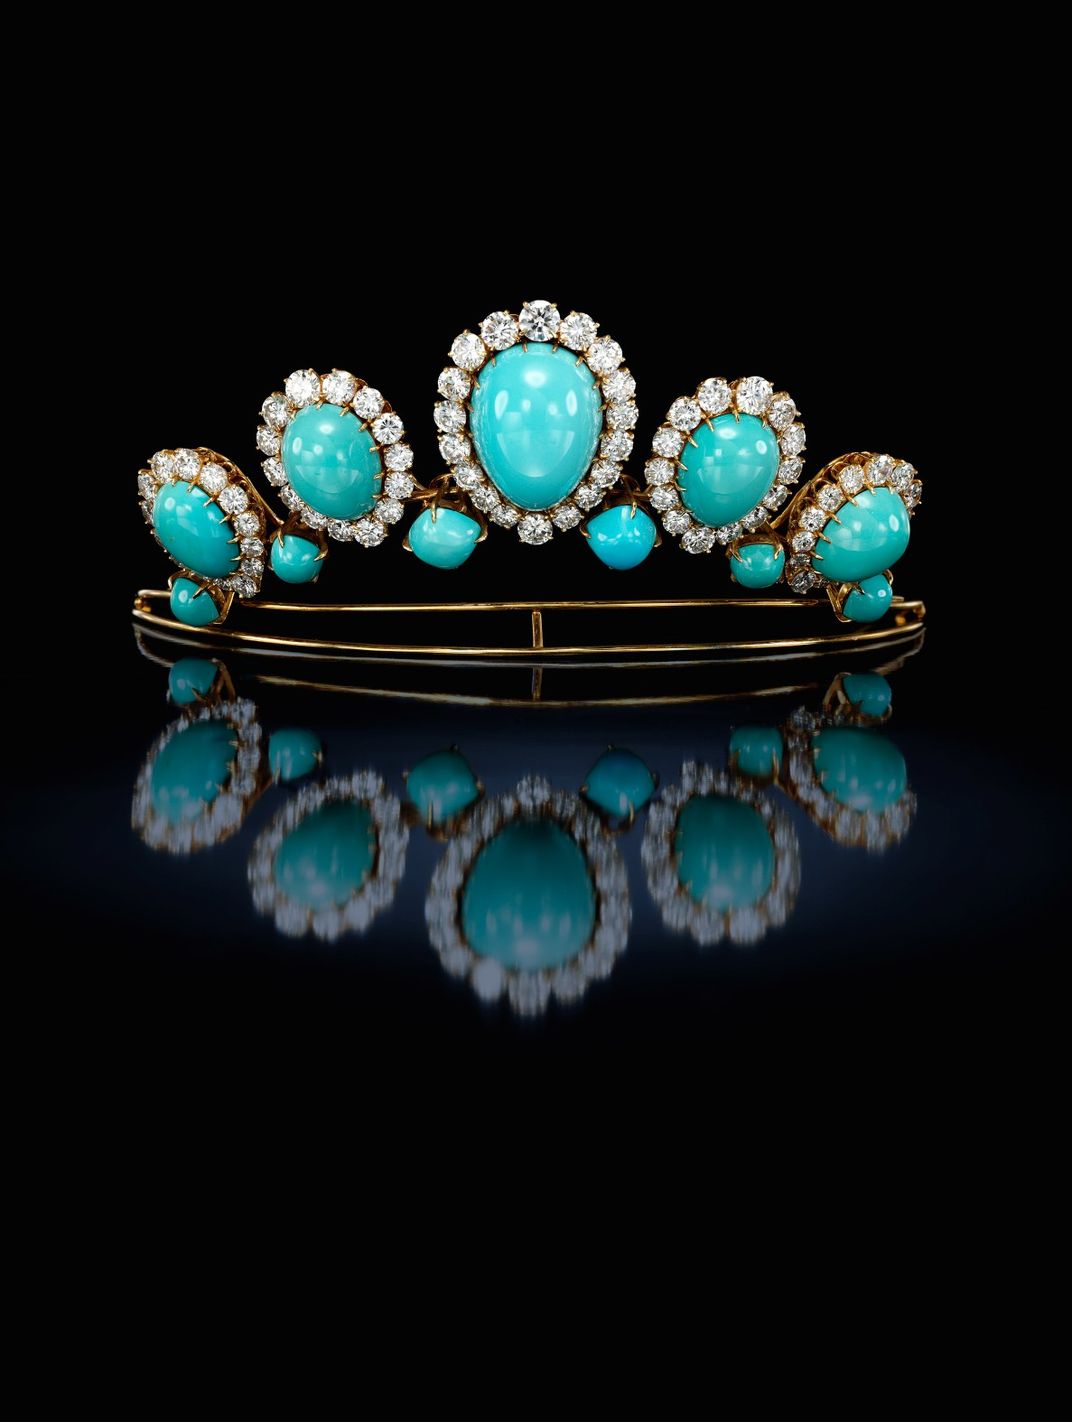 1960s turquoise tiara